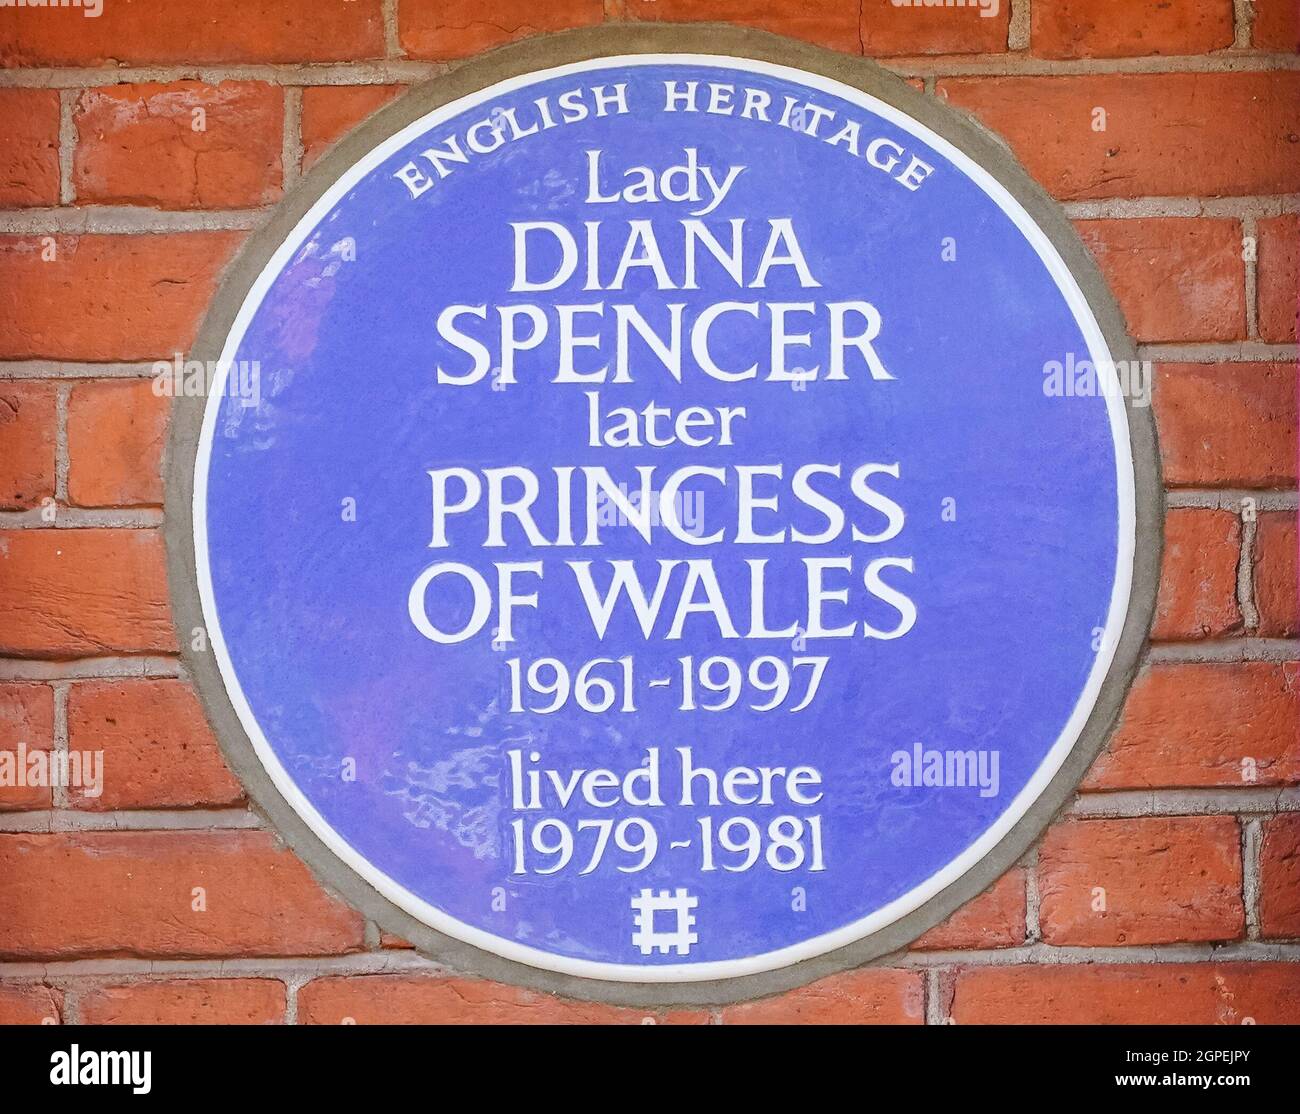 Vue générale de la nouvelle plaque bleue du patrimoine anglais à Diana, princesse de Galles, devant la cour de Coleherne, Old Brompton Road, Londres. Date de la photo: Mercredi 29 septembre 2021. Banque D'Images